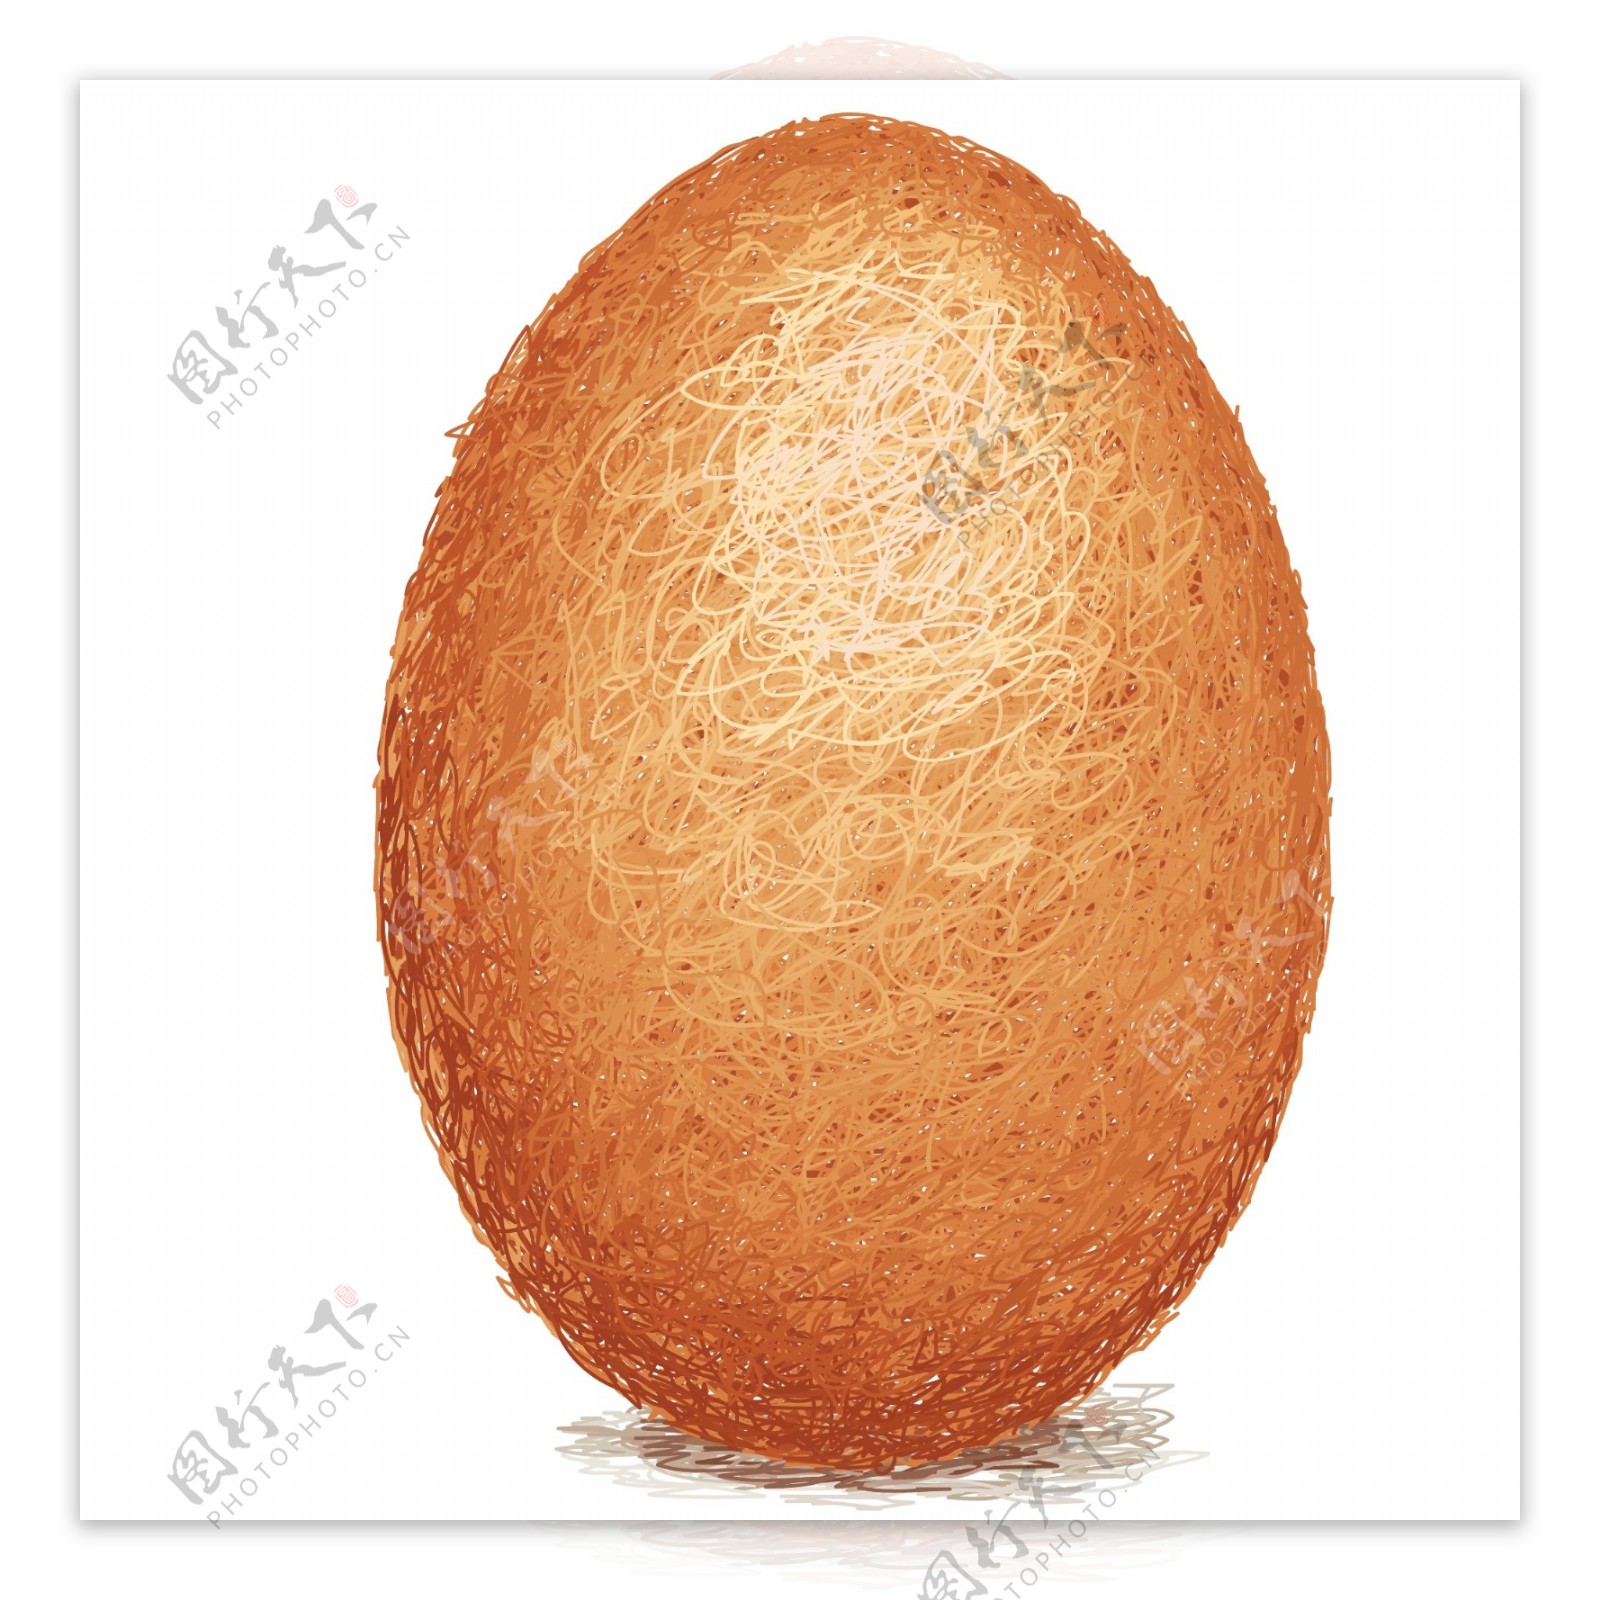 棕色的鸡蛋